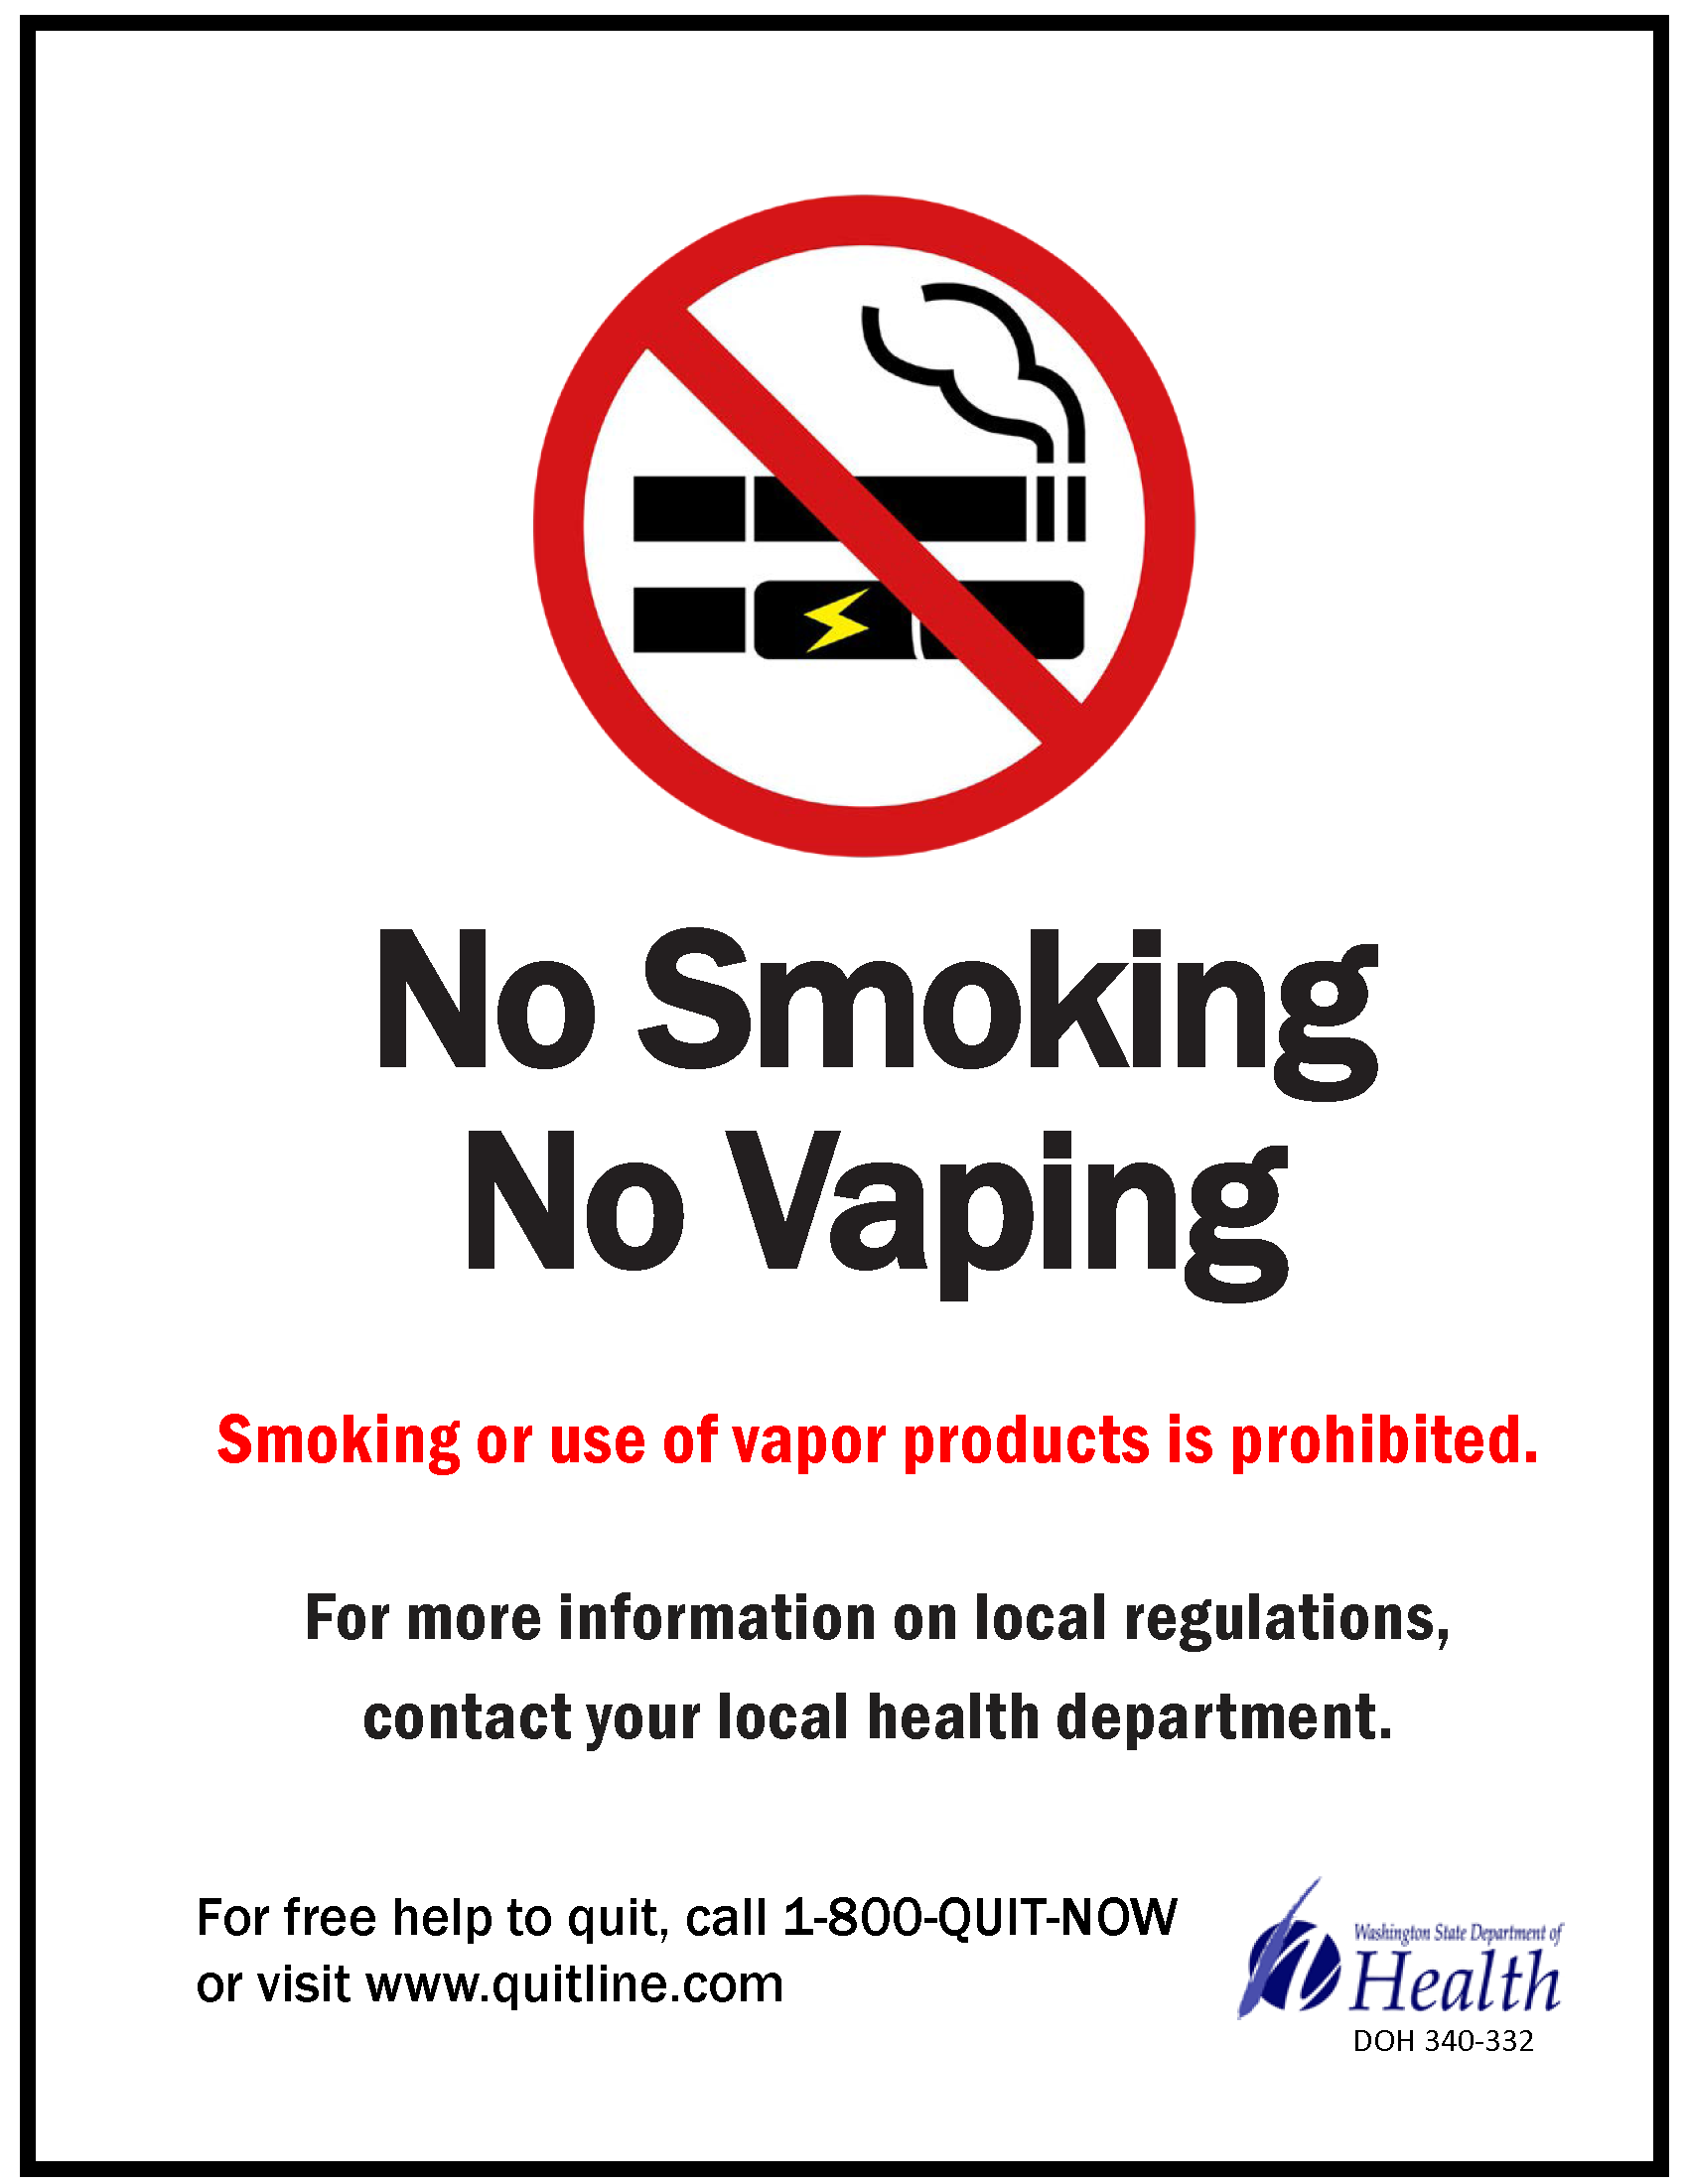 No smoking & vaping sign B&W